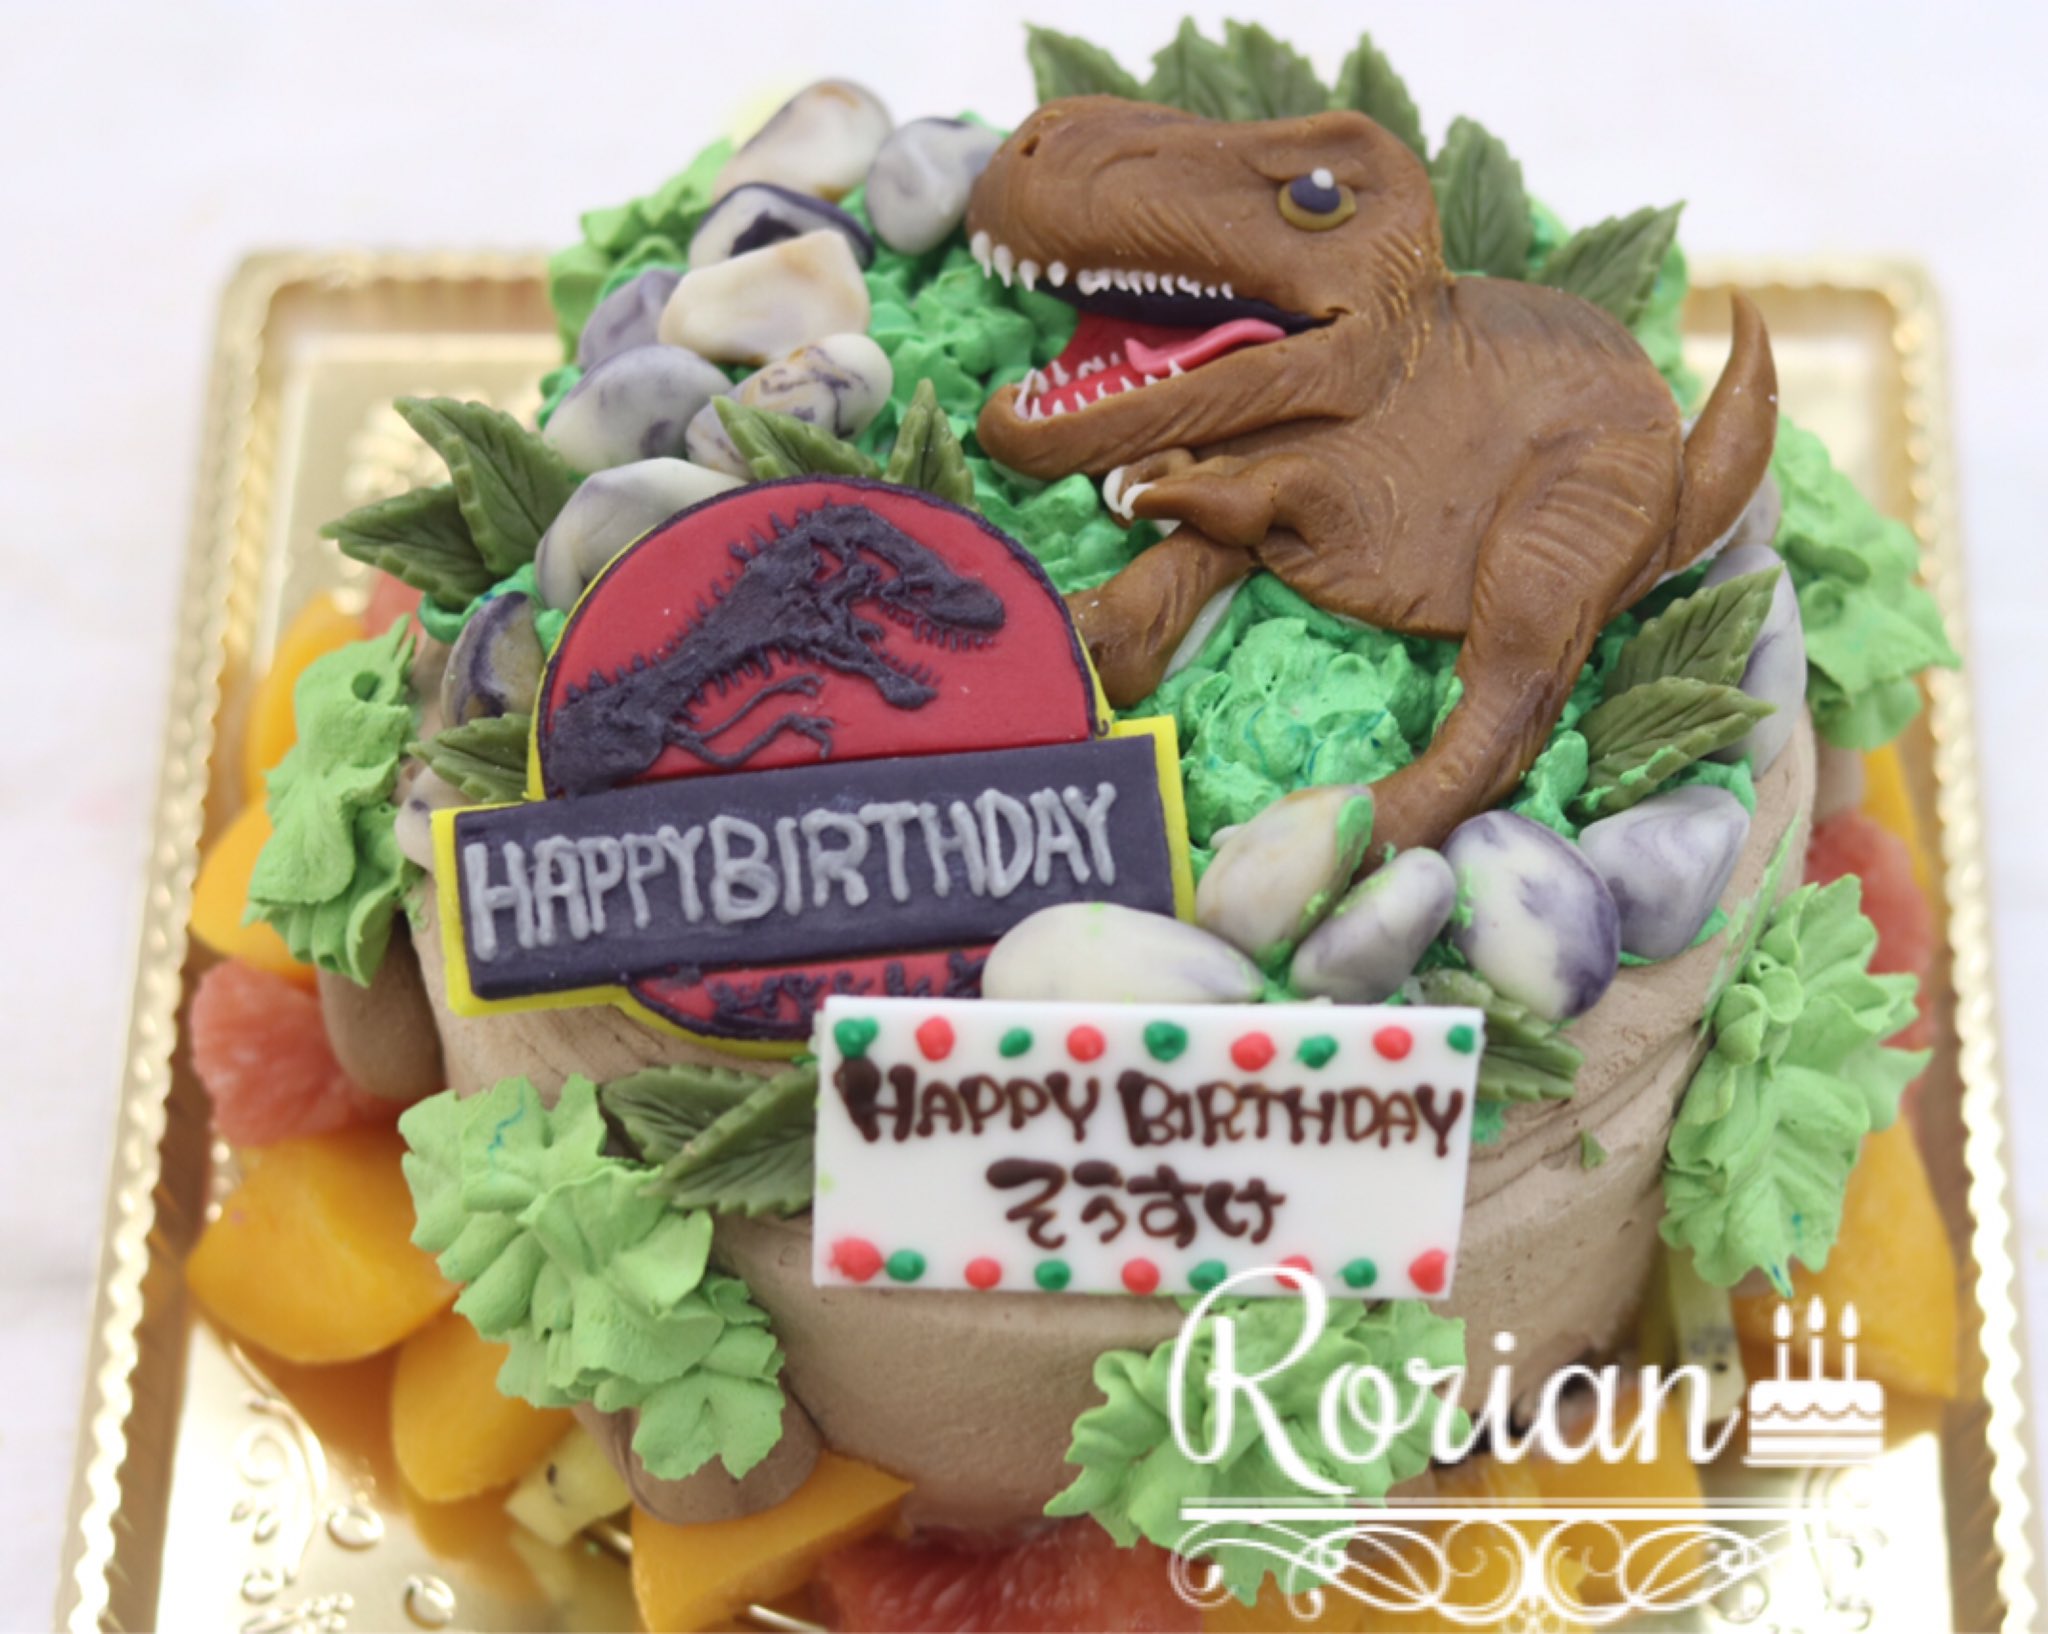 Patisserie Rorian パティスリーロリアン Twitterissa 本日のバースデーケーキのご紹介です 思い出作りのお手伝いが出来ました事を嬉しく思います バースデー バースデーケーキ デコレーション デコレーションケーキ お誕生日 お誕生日ケーキ キャラクター